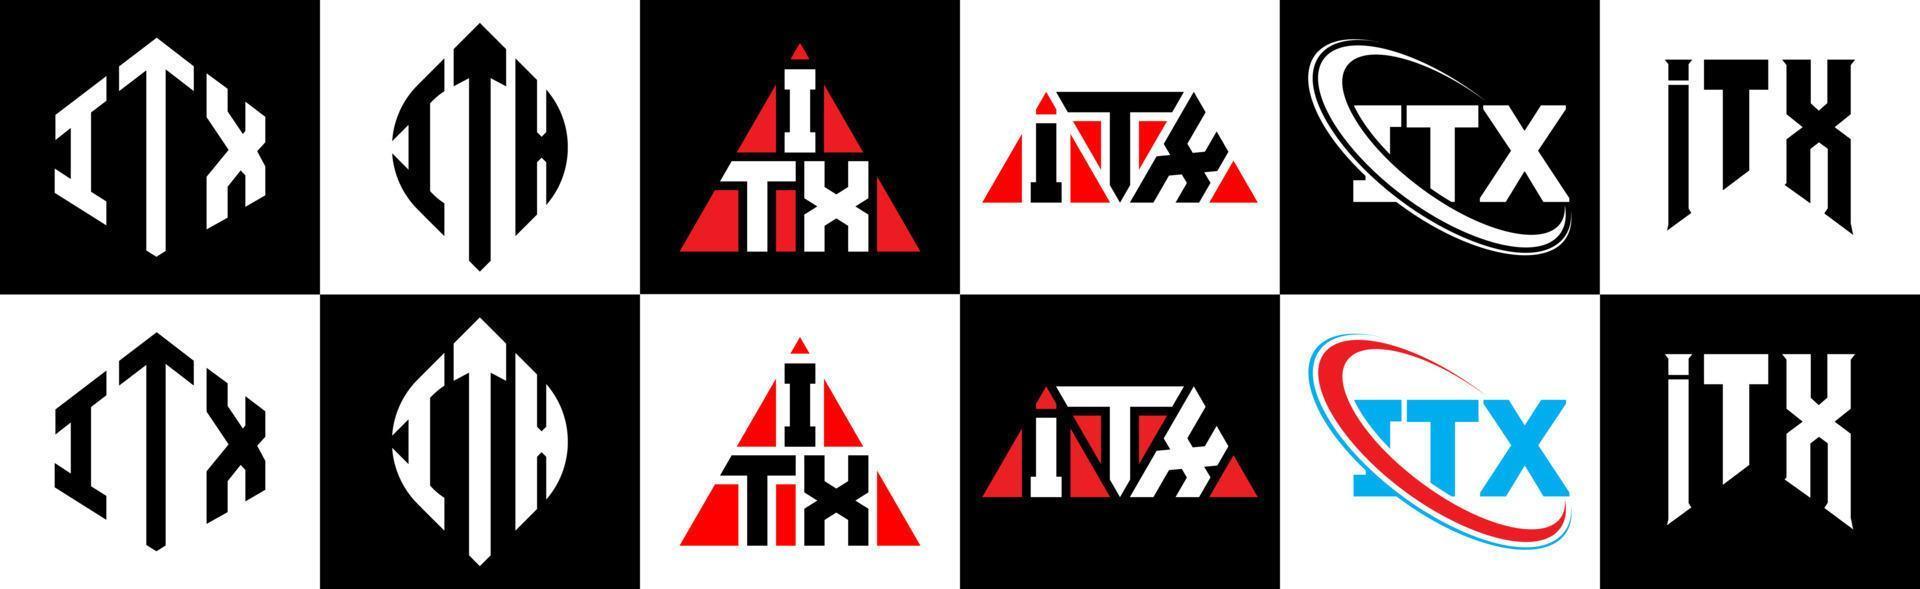 itx-Buchstaben-Logo-Design in sechs Stilen. Itx-Polygon, Kreis, Dreieck, Sechseck, flacher und einfacher Stil mit schwarz-weißem Buchstabenlogo in einer Zeichenfläche. itx minimalistisches und klassisches Logo vektor